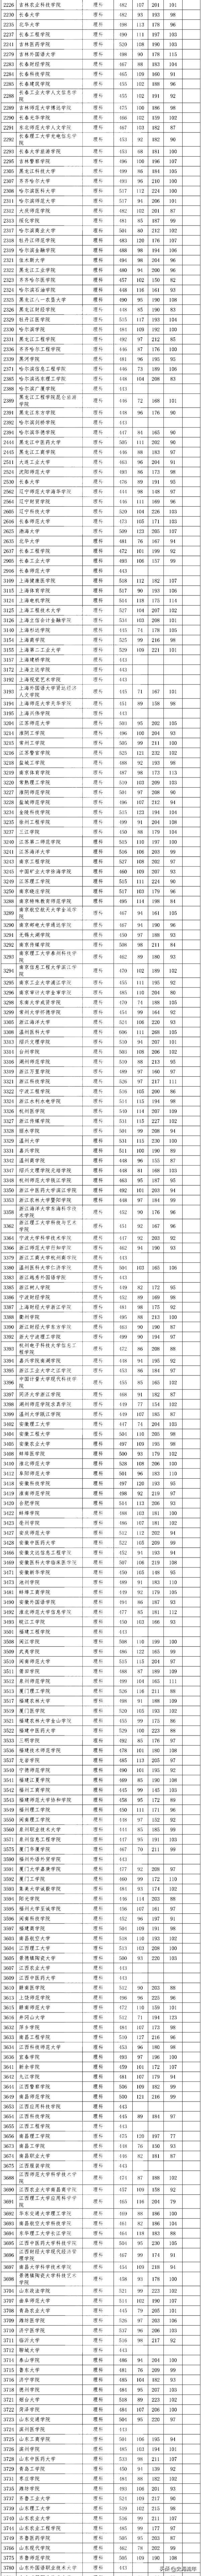 四川高考录取分数线2020